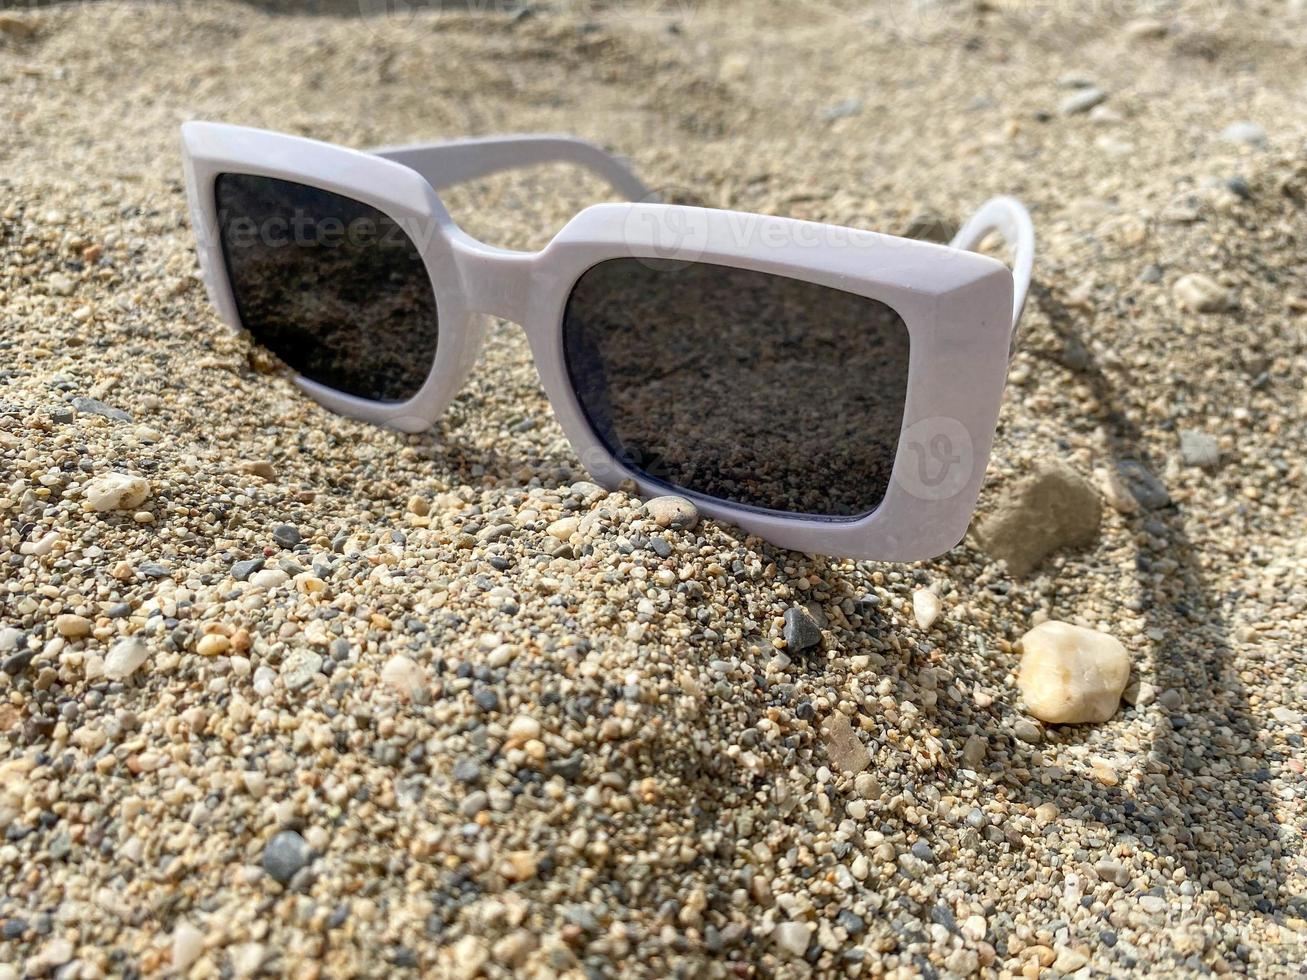 óculos de sol de plástico branco para mulheres na areia amarela de uma praia em um resort de paraíso do sul do país tropical oriental quente foto